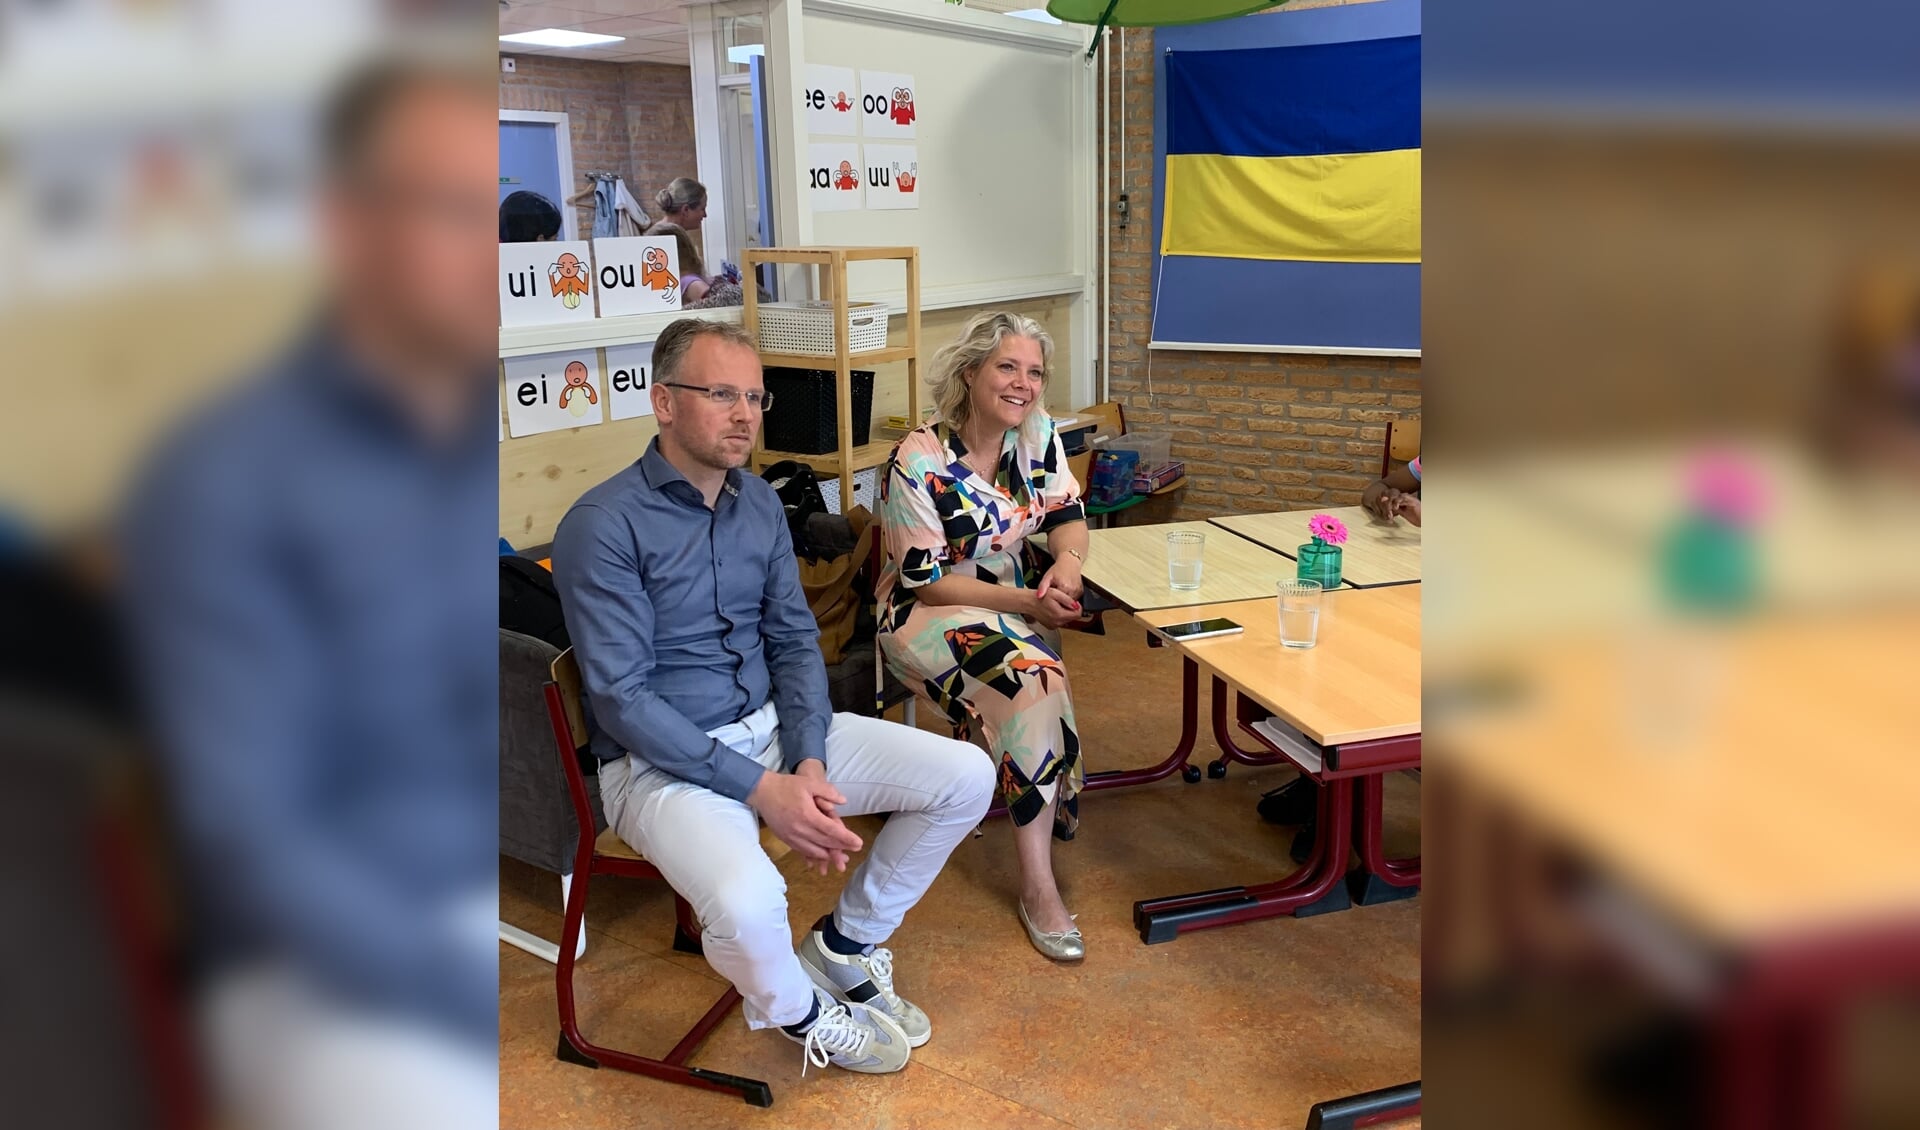 Burgmeester Marleen Sanderse en wethouder onderwijs Martijn Hospers hebben vorige week een kijkje genomen in de nieuwkomers klas van OBS de Vlonder.